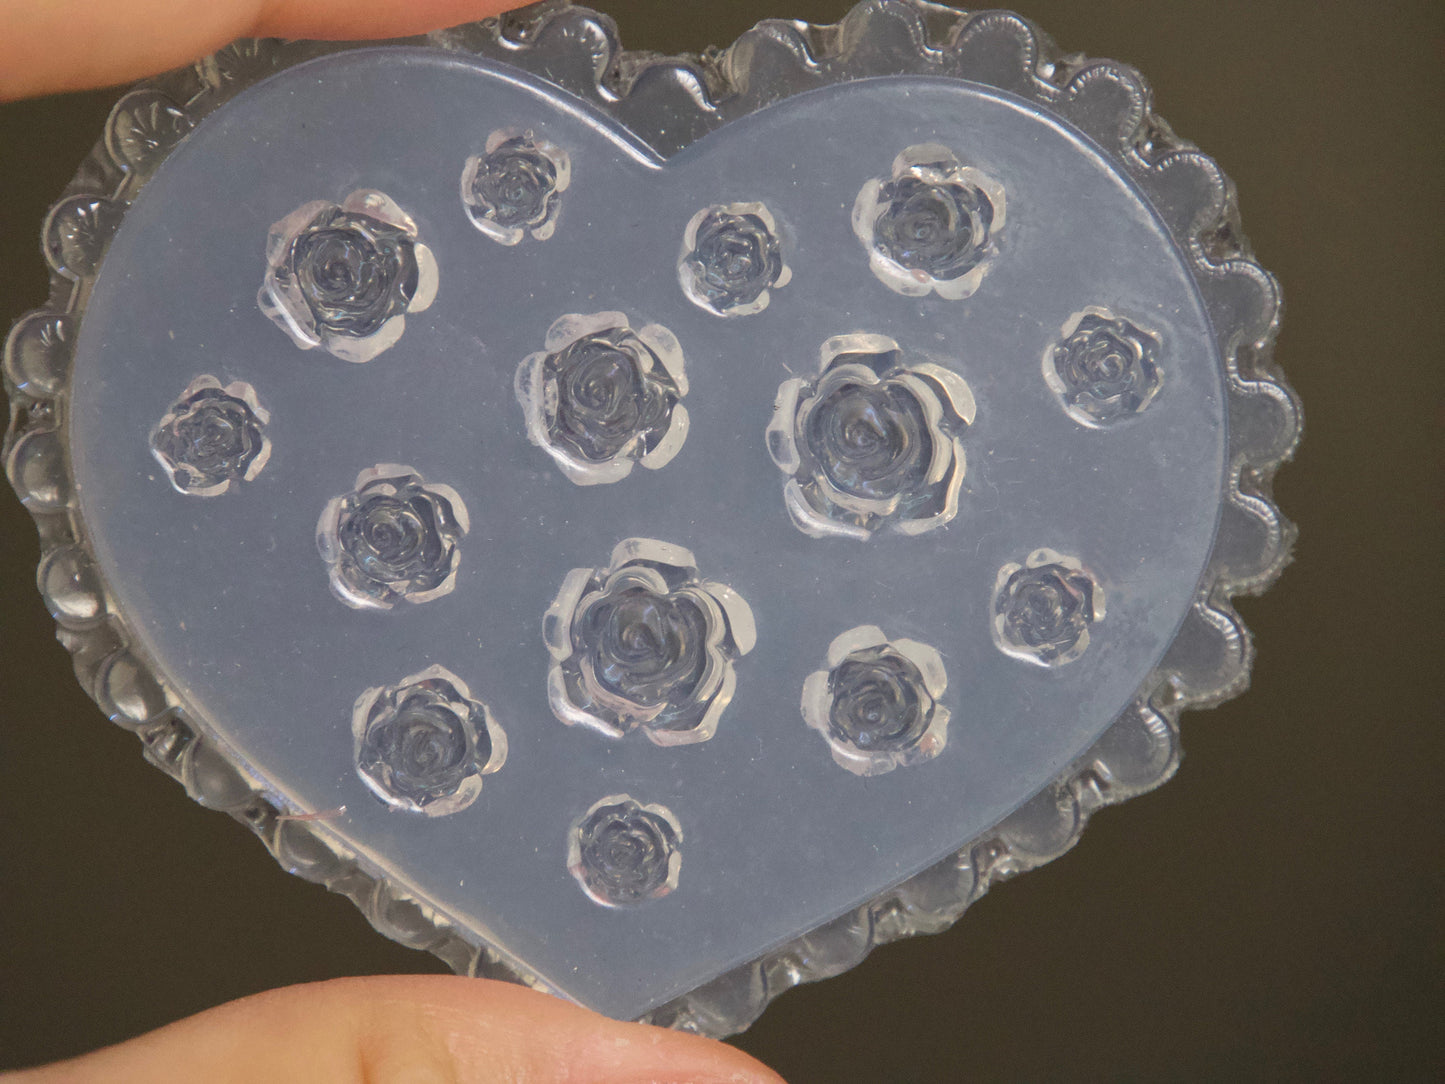 Rose Flower 3D Mold for Nail Art DIY Decoration Design